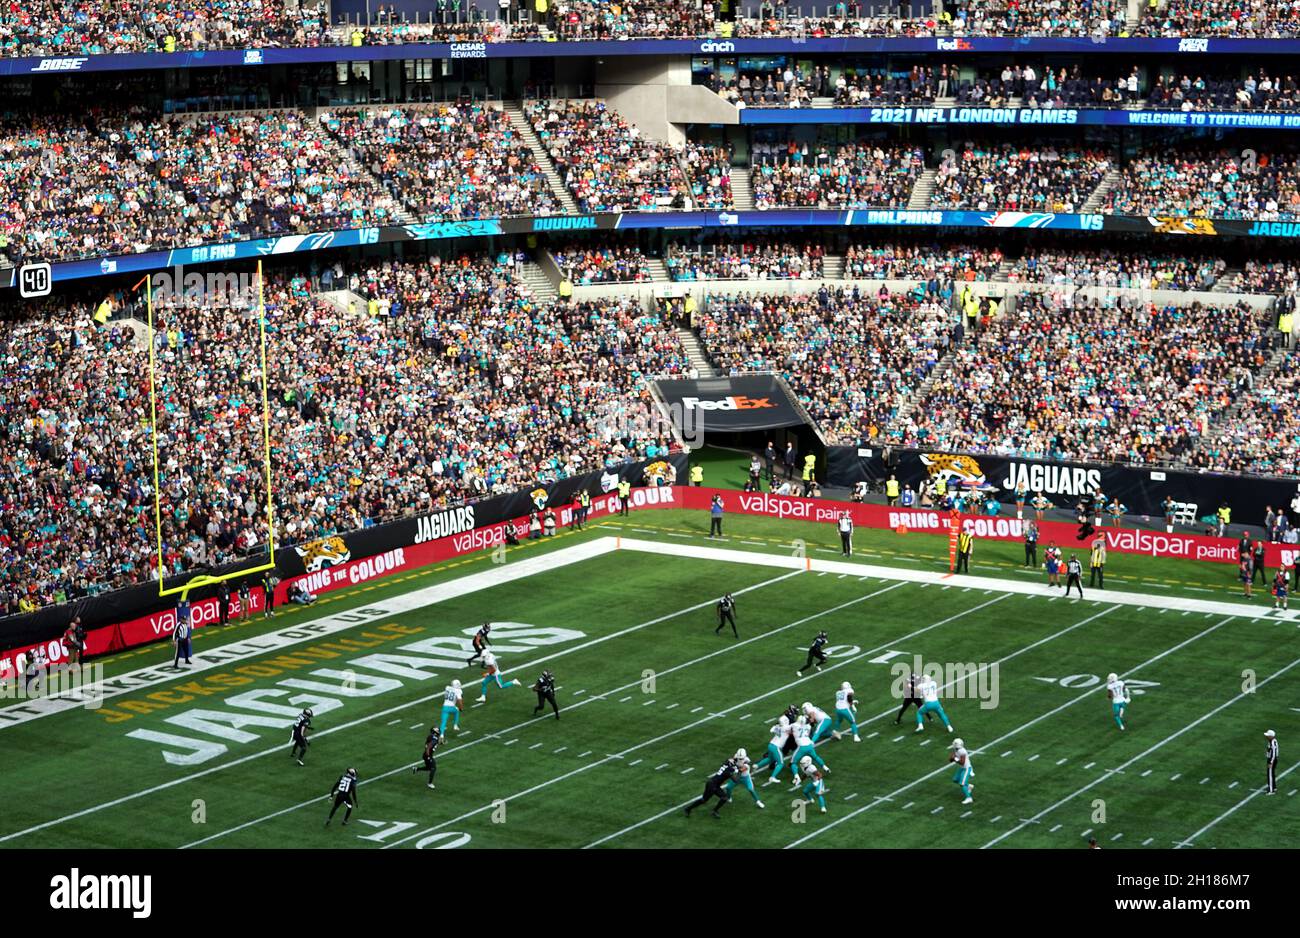 Vue générale de l'action pendant le match qui fait partie de la NFL London Games au Tottenham Hotspur Stadium, Londres.Date de la photo: Dimanche 17 octobre 2021. Banque D'Images